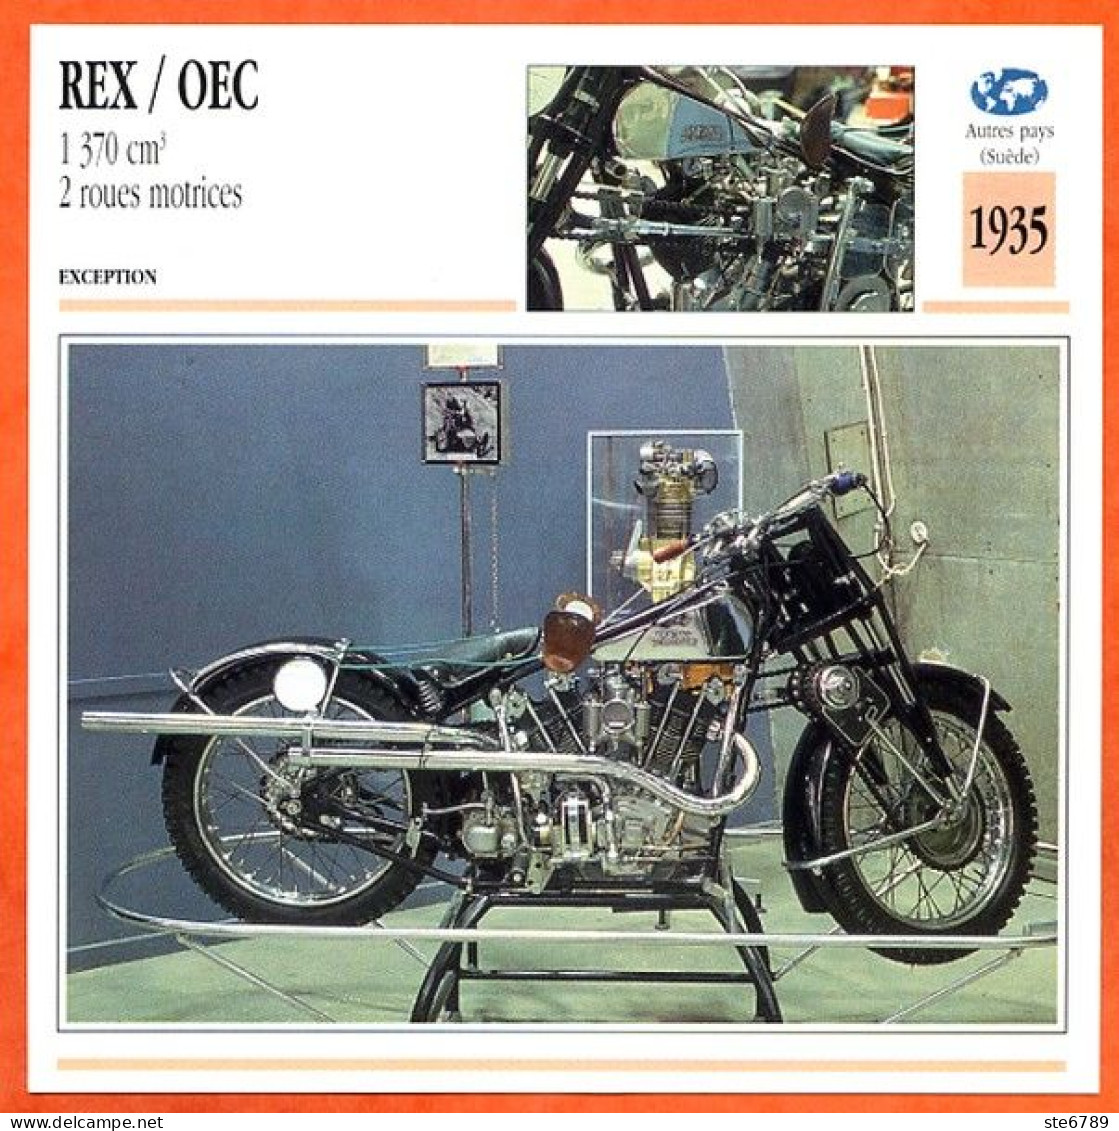 REX / OEC 1370 2 R Motrices 1935 Suede Fiche Technique Moto - Sport